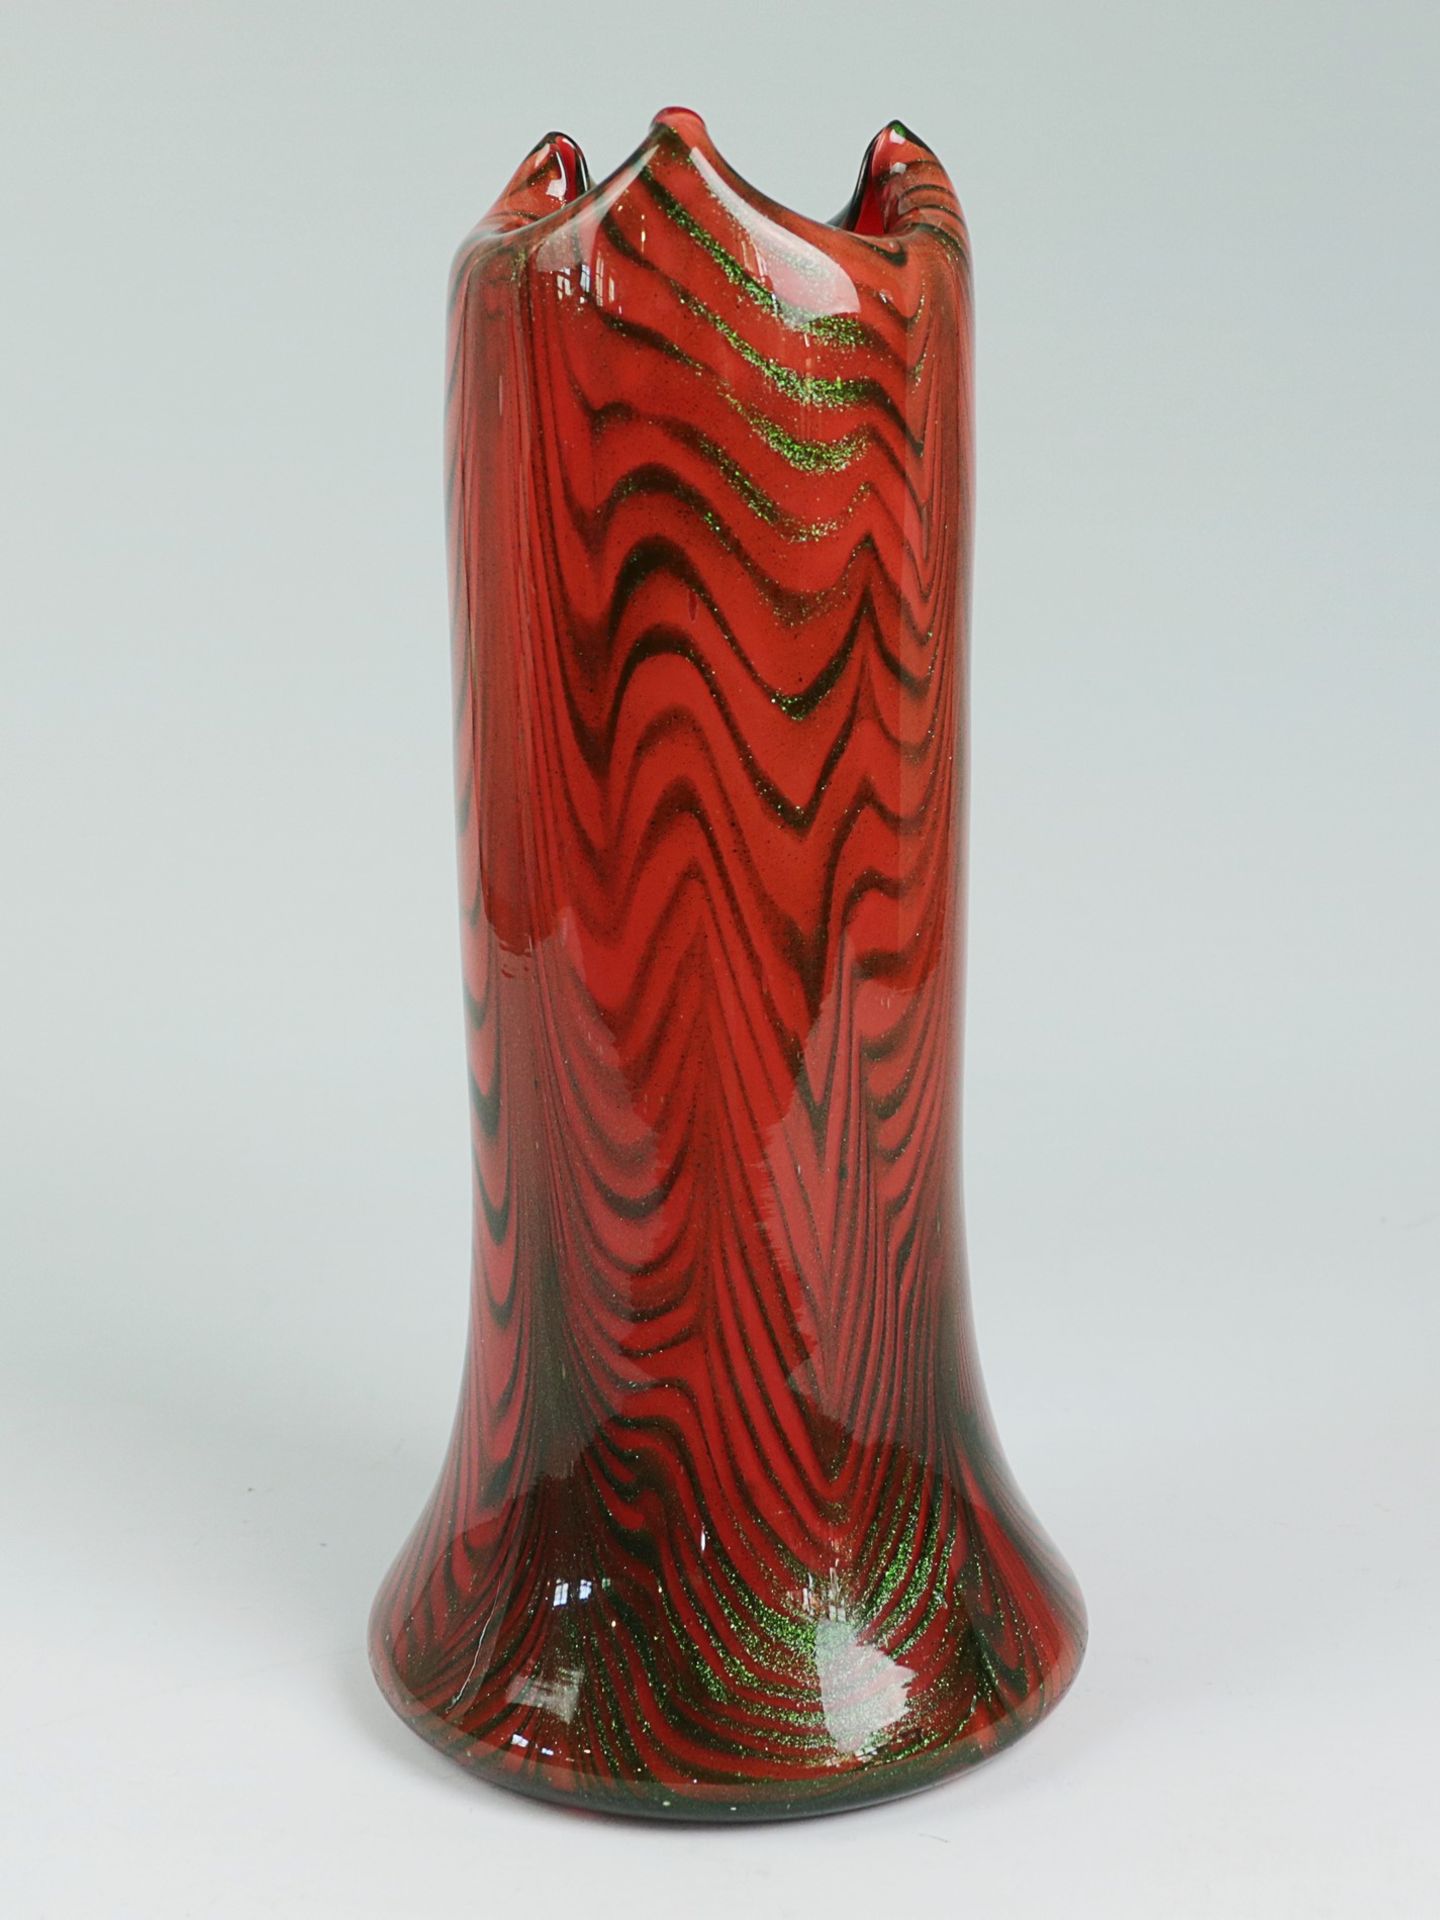 Leerdam Unica - Vase 1950/60er J., farbloses dickwandiges Glas, runder breiter Stand m